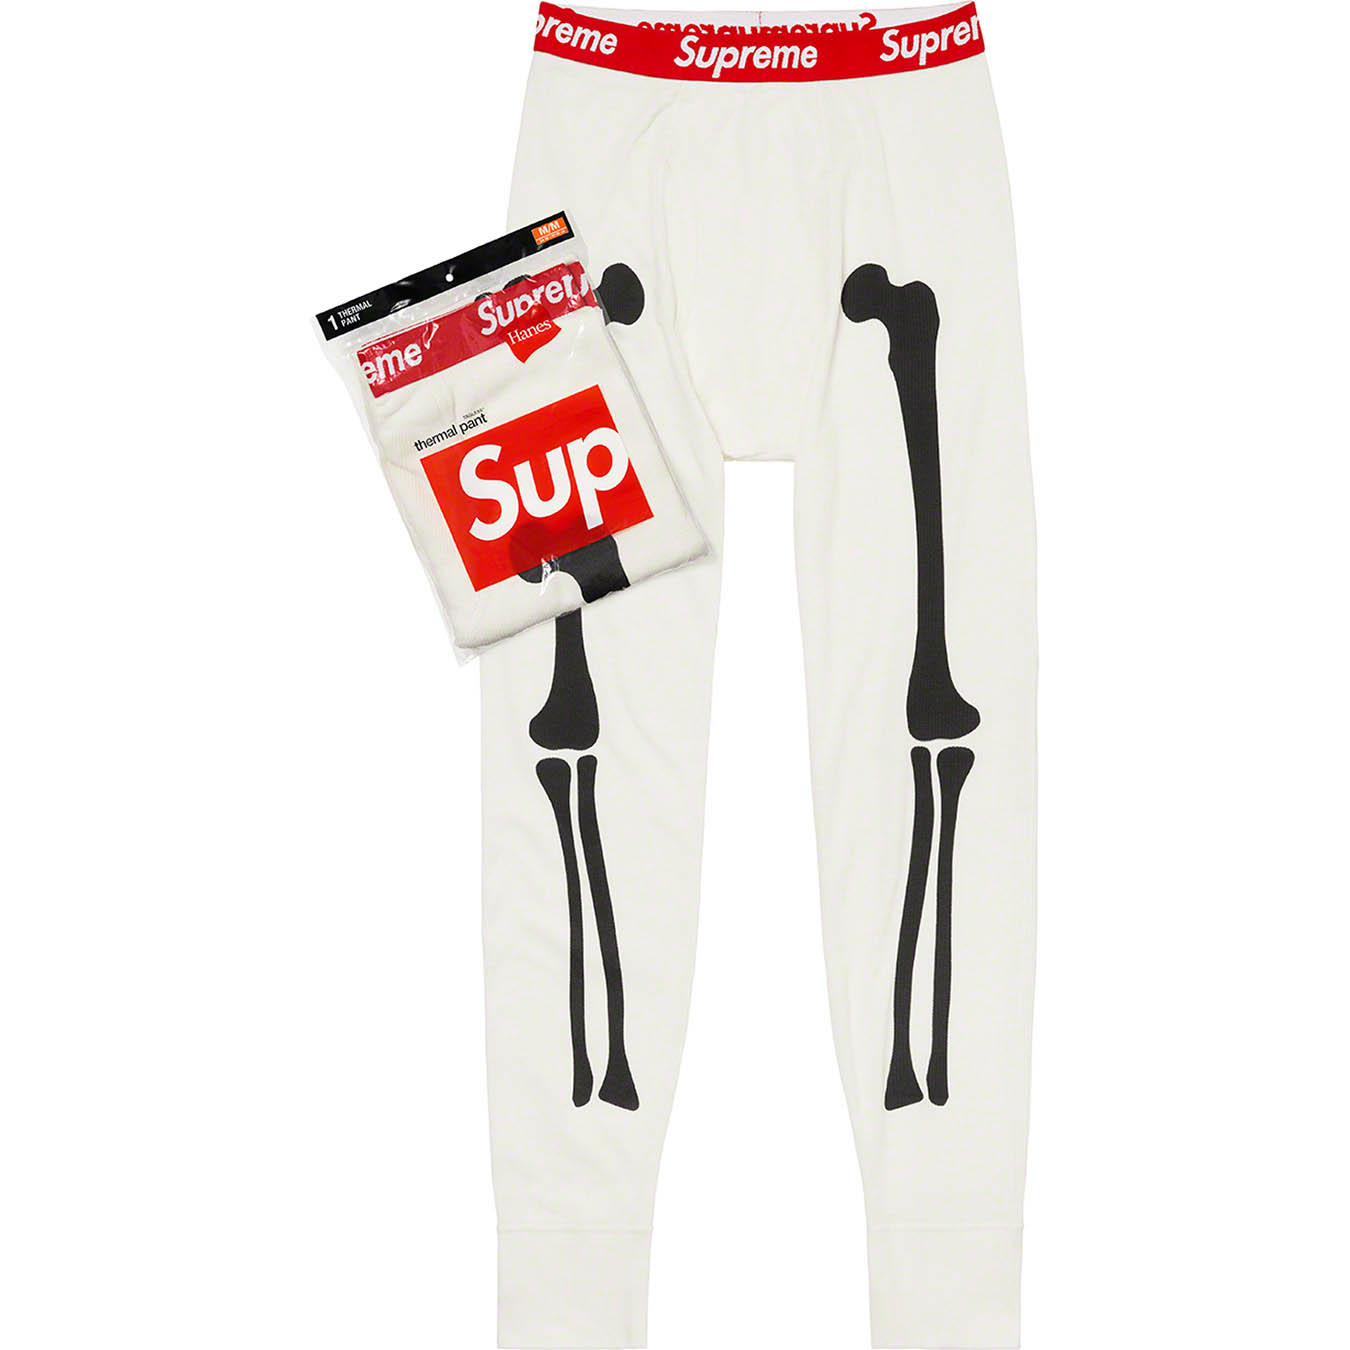 Supreme®/Hanes® Bones Thermal Pant (1 Pack)